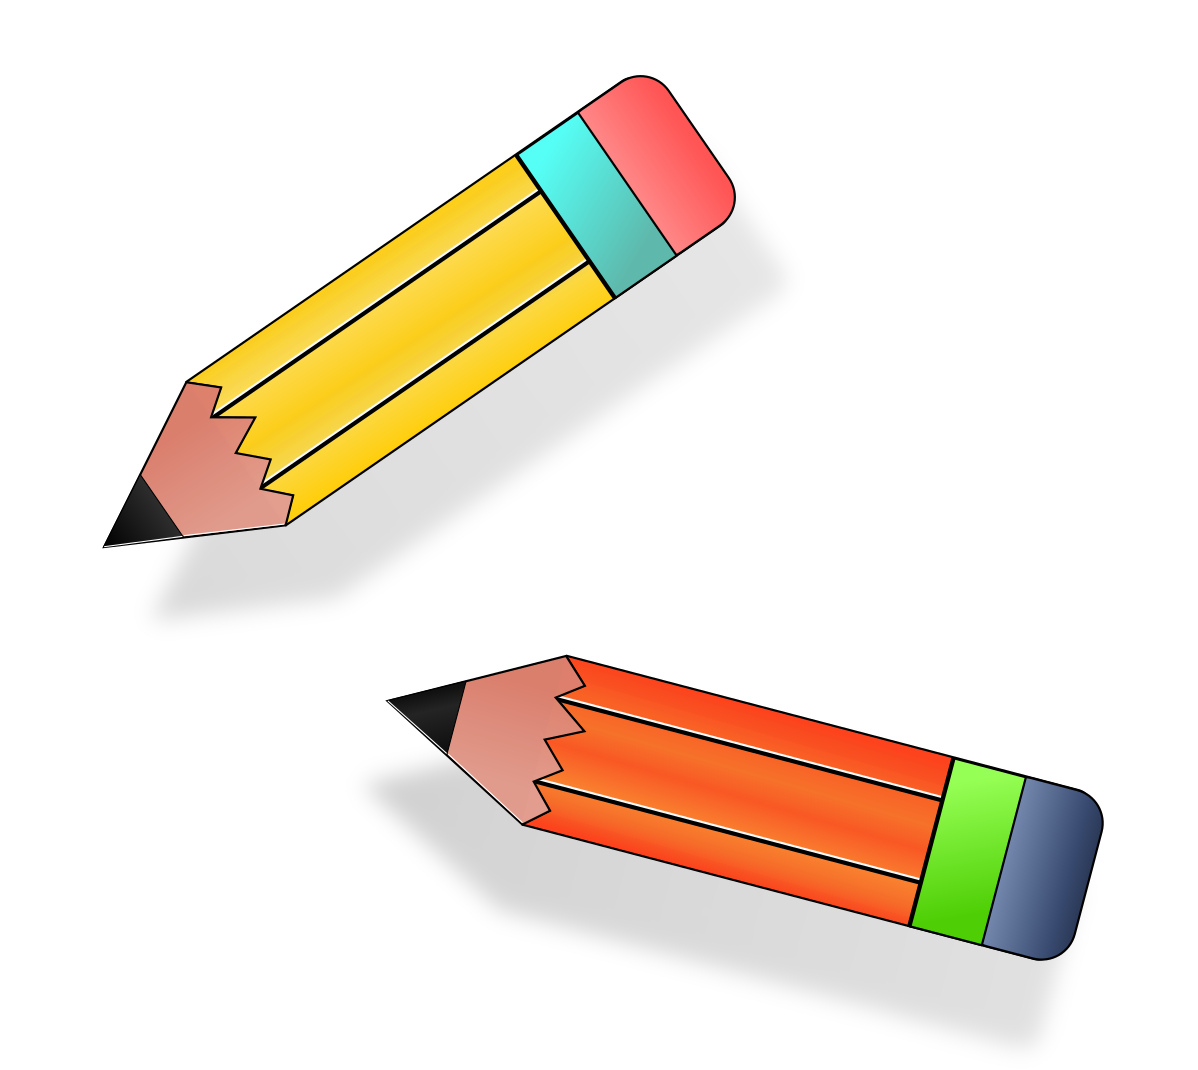 Pencil windows. Цветные карандаши на прозрачном фоне. Рисунки карандашом. Изображение карандаша. Что нарисовать карандашом.